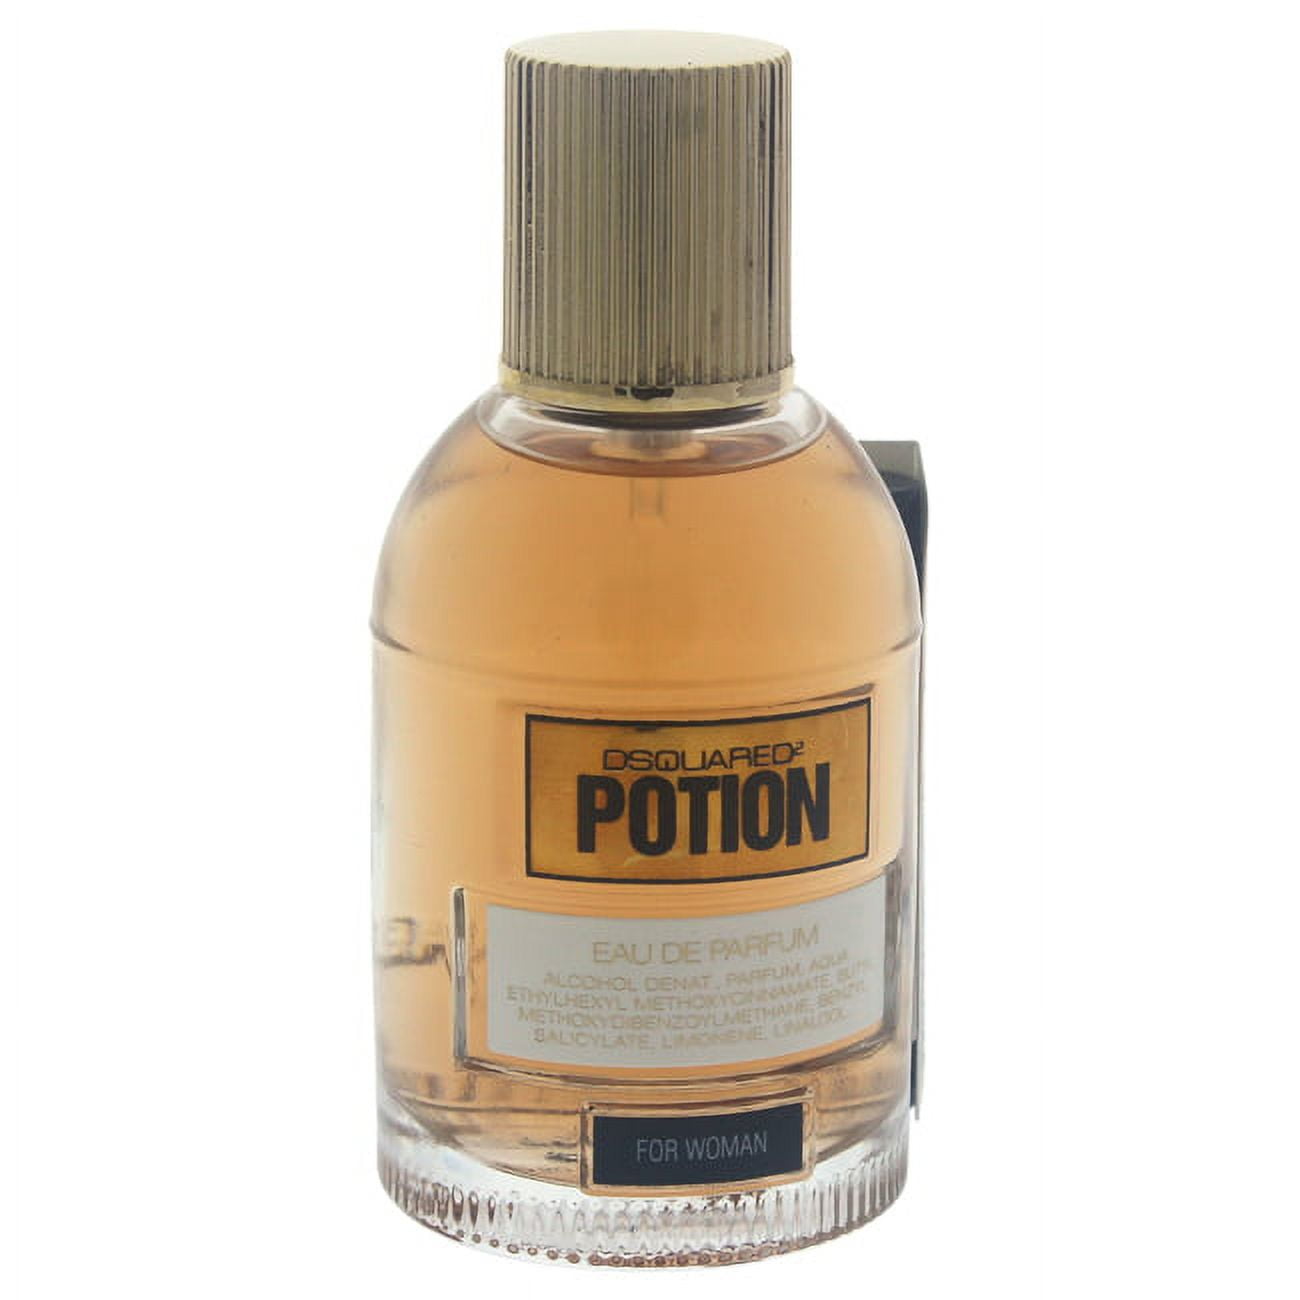 Dsquared2 Potion Eau De Parfum Spray 1.7 oz